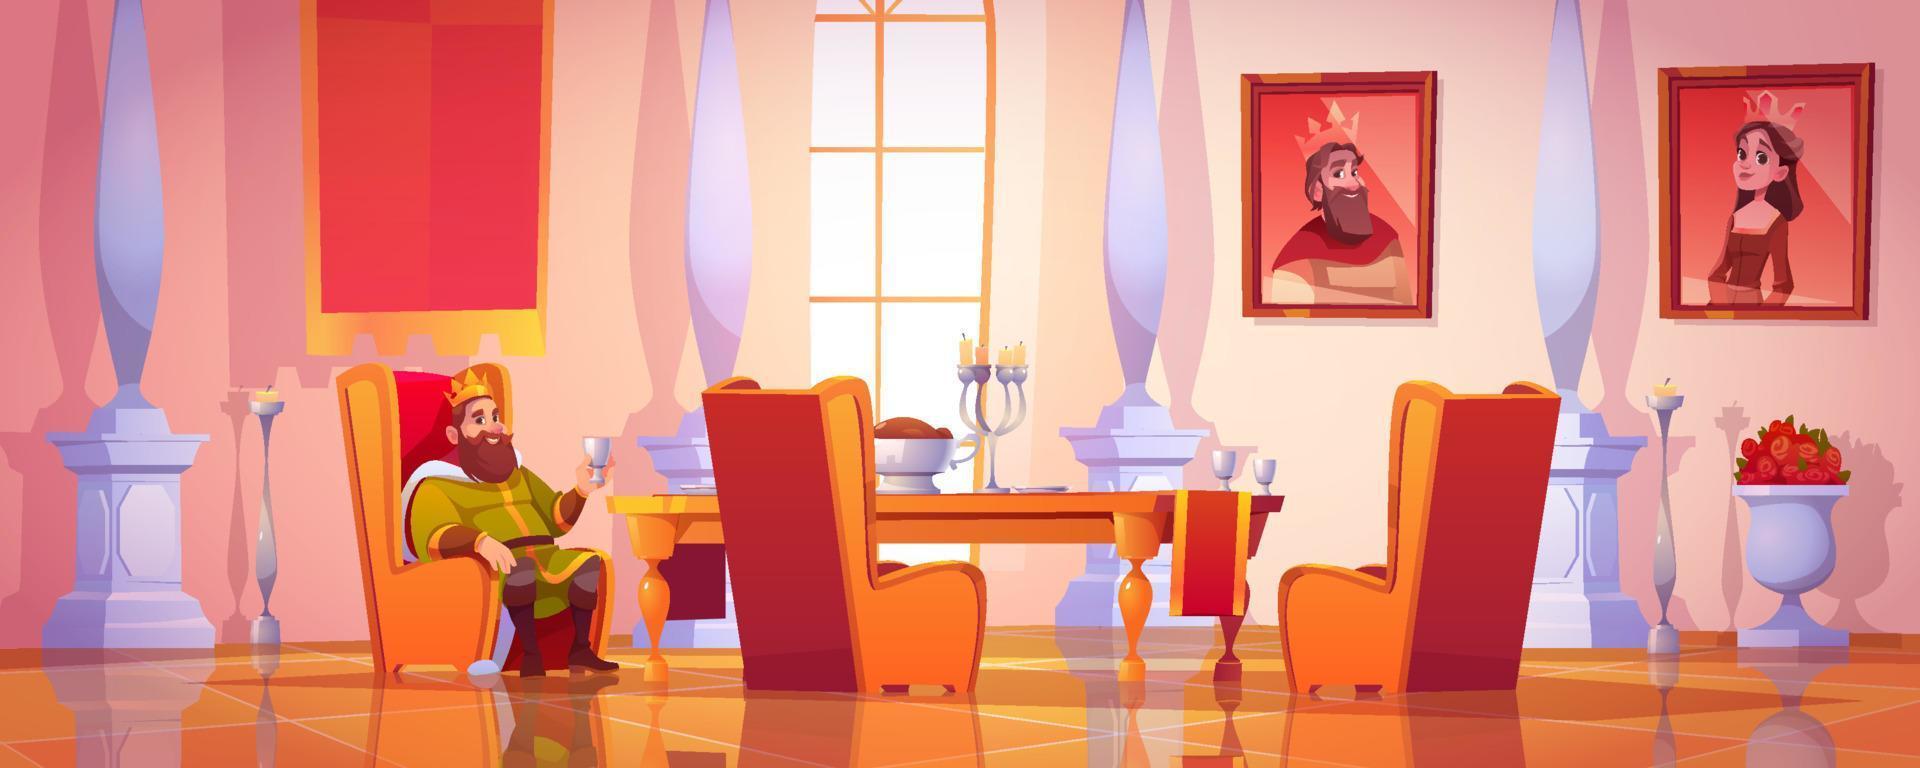 König mit Kelch am Tisch sitzend mit Essen, Utensilien und Essen im Speisesaal des Schlosses. mittelalterlicher palastinnenraum mit porträts der königlichen familie, möbeln und marmorsäulen, karikaturvektorillustration vektor